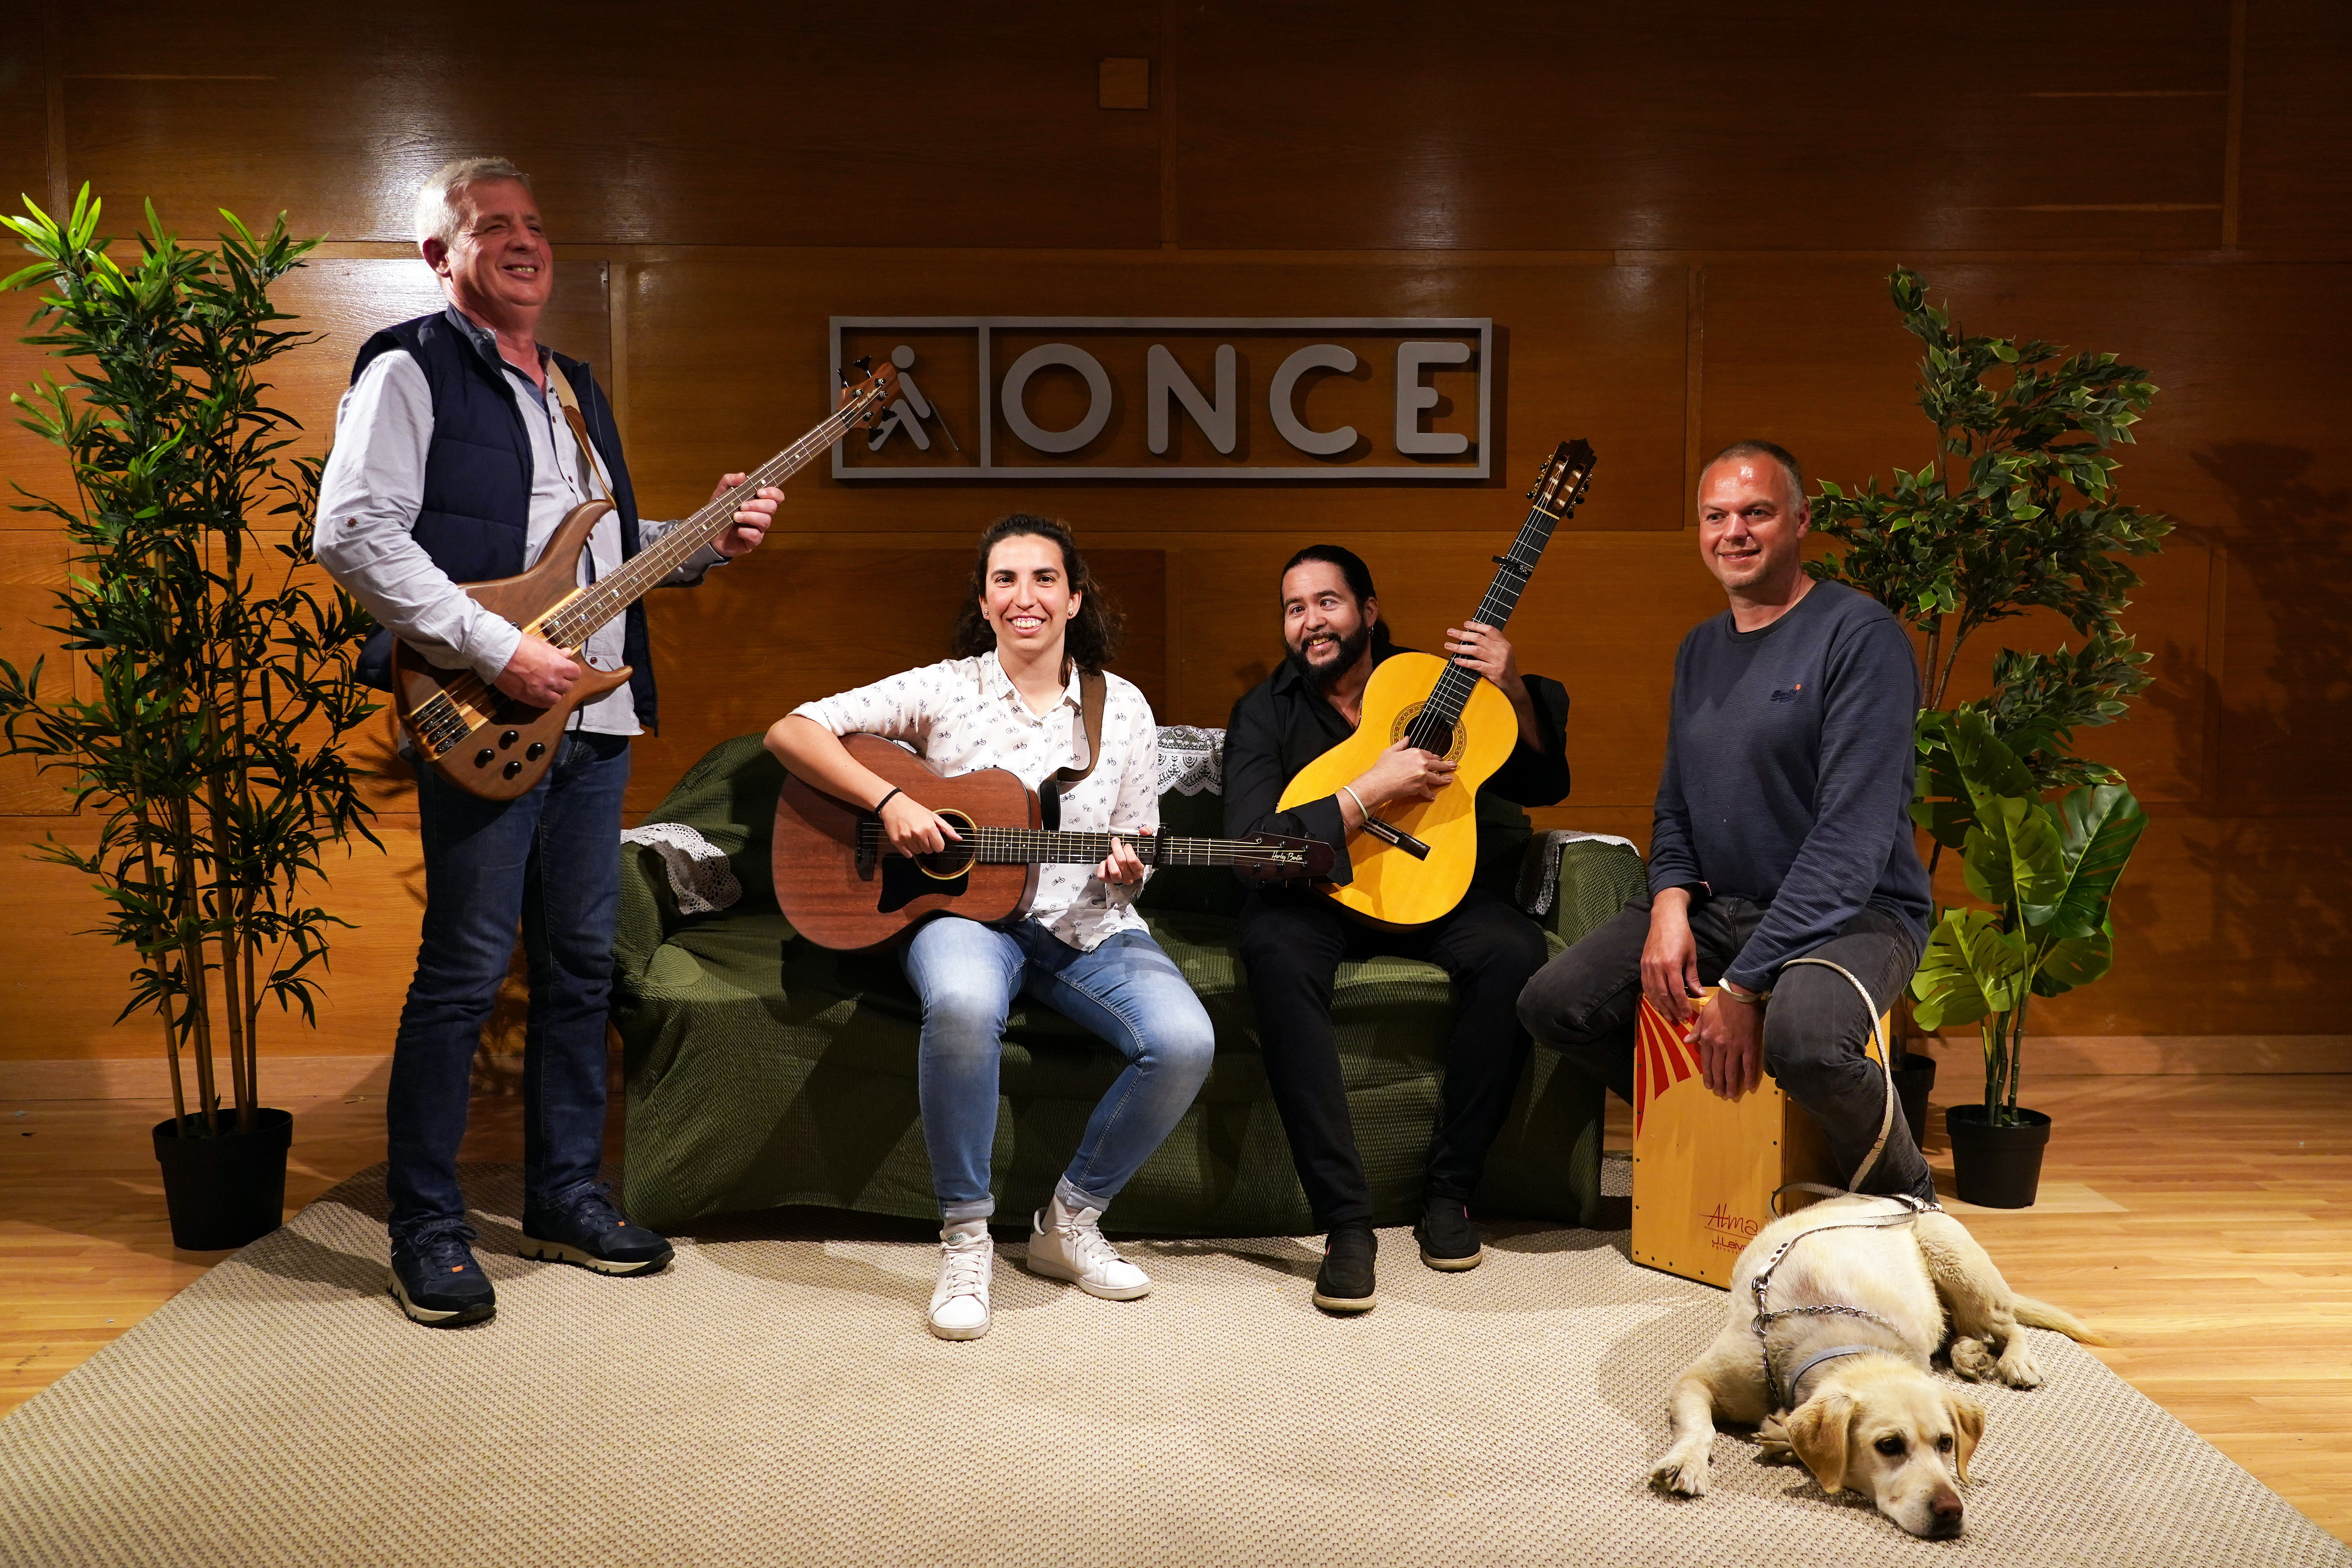 'Cuatro patas pa un banco', embrión de un nuevo grupo de fusión de pop rock flamenco